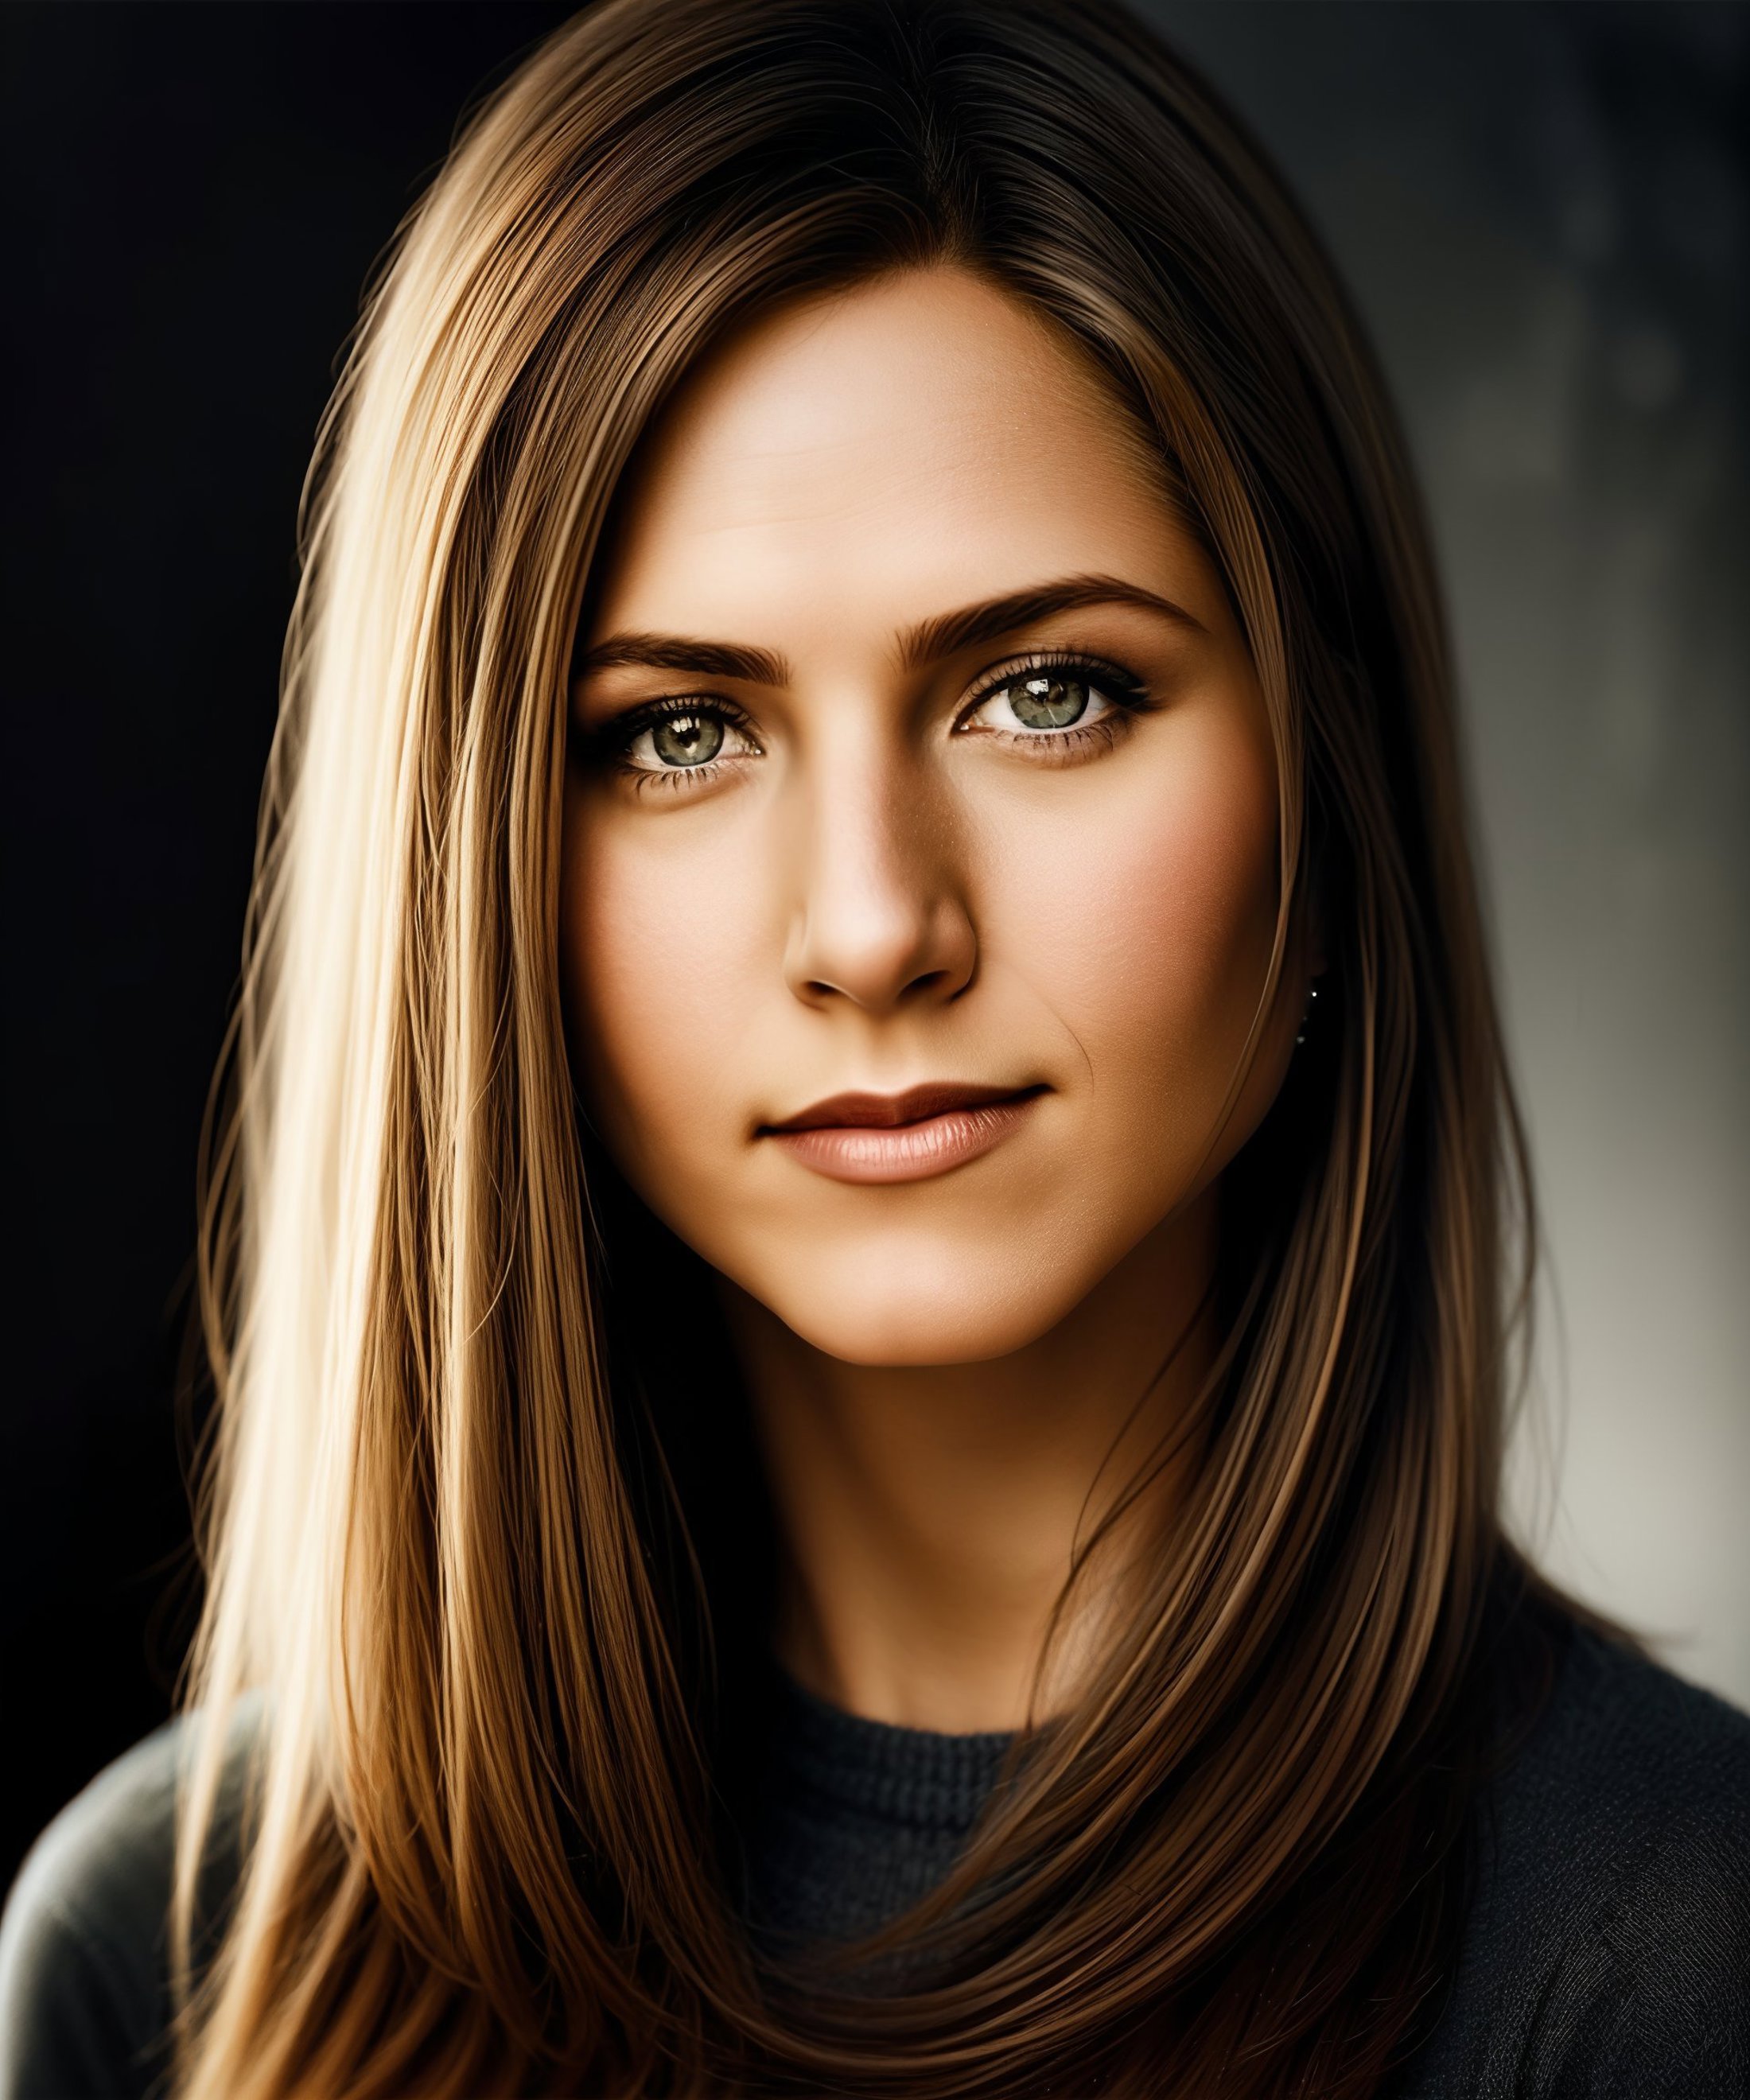 Jennifer Aniston image by Digital_Art_AI